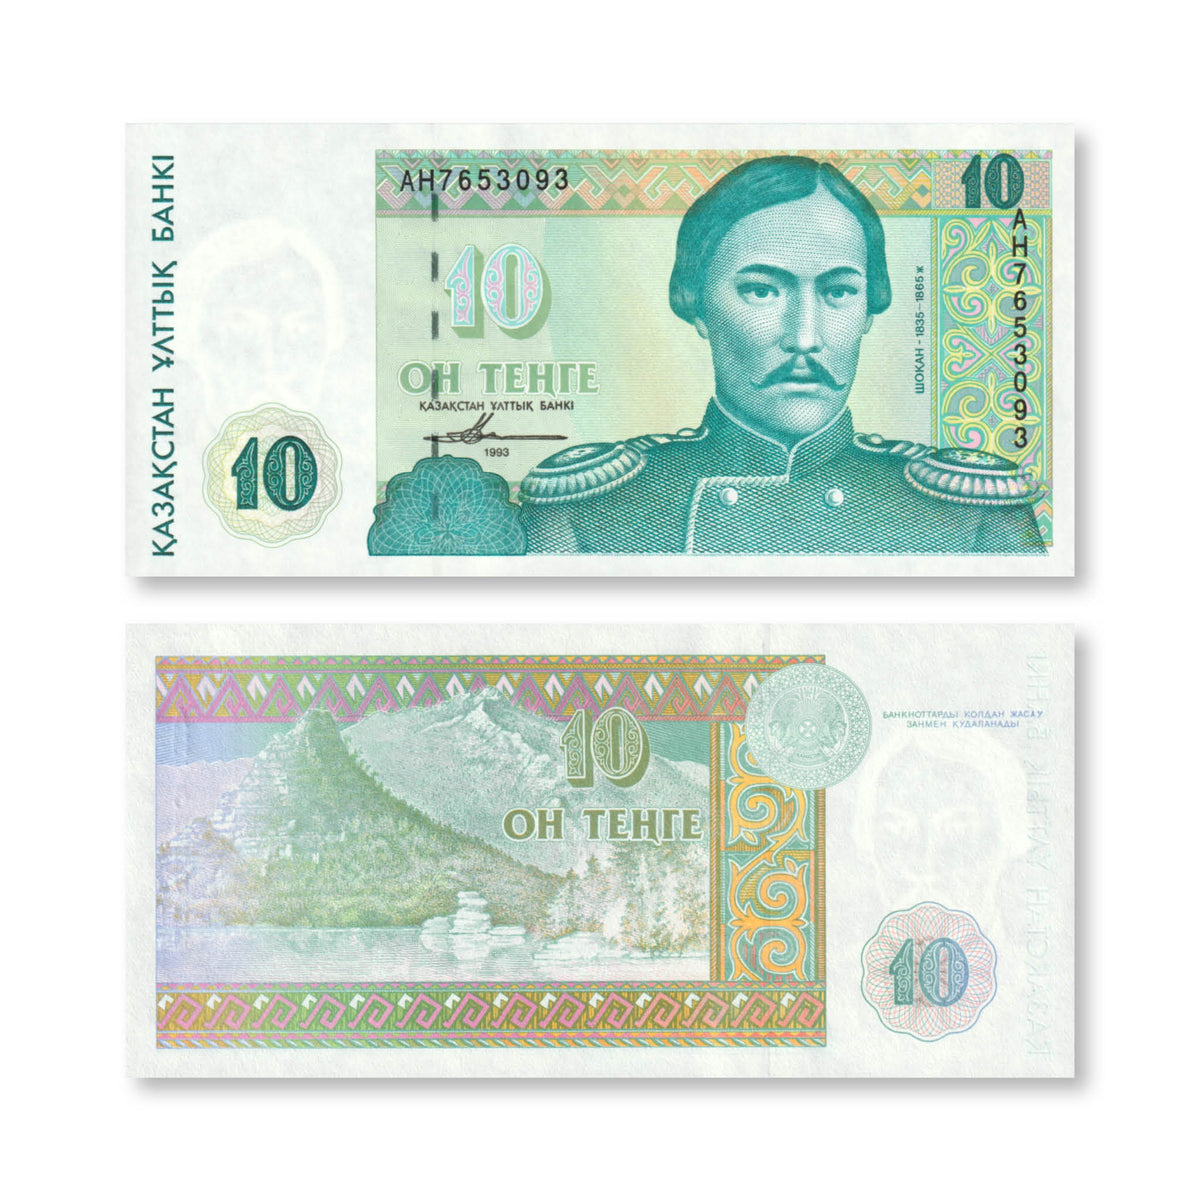 Kazakhstan 10 Tenge, 1993, B110a, P10a, UNC - Robert's World Money - World Banknotes